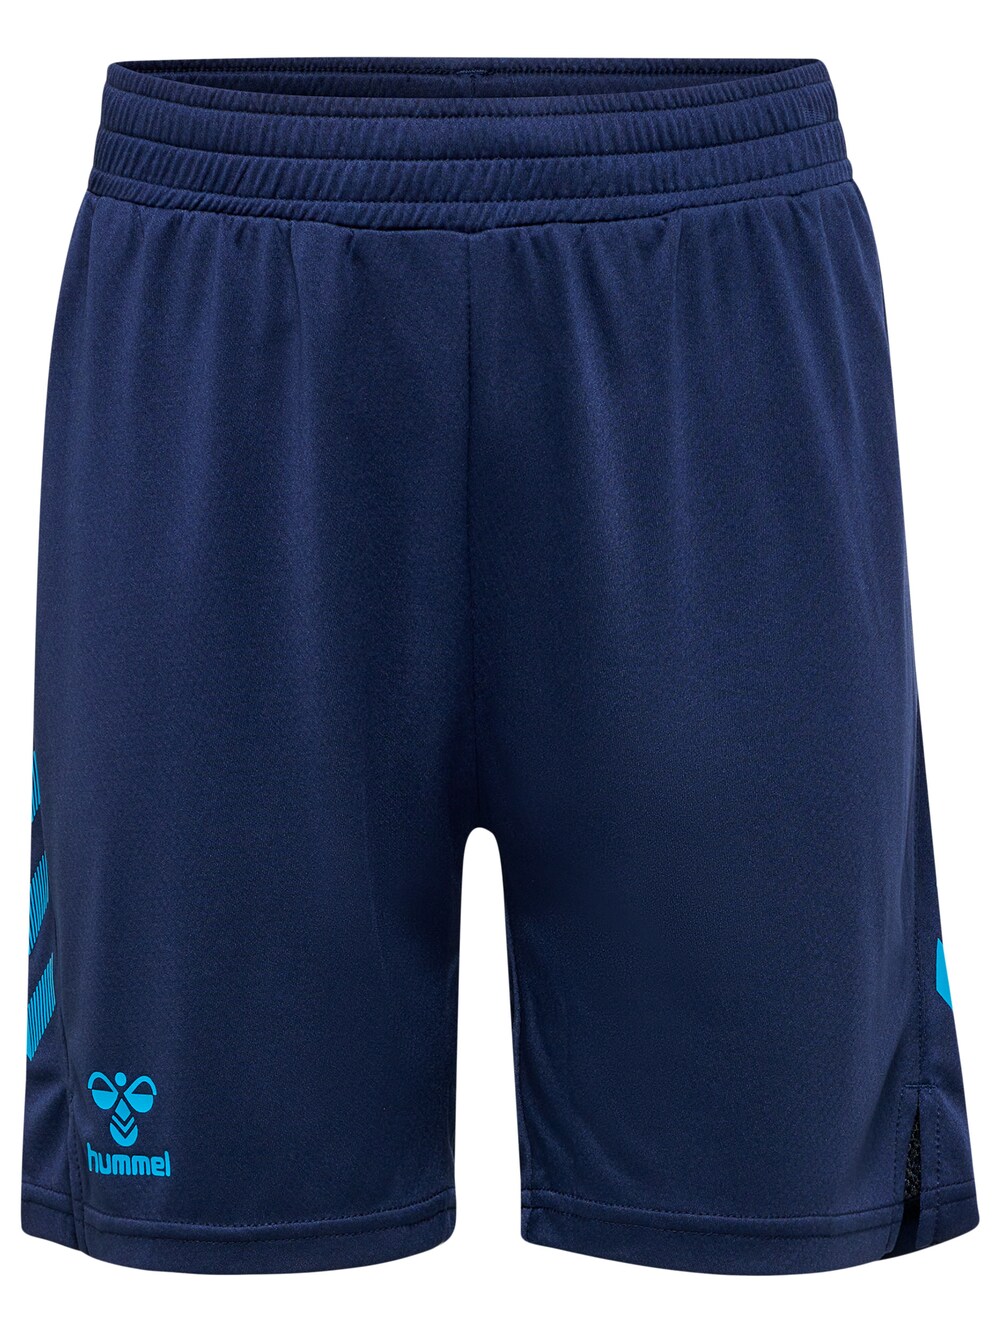 Обычные тренировочные брюки Hummel, синий обычные тренировочные брюки cruz неоново синий